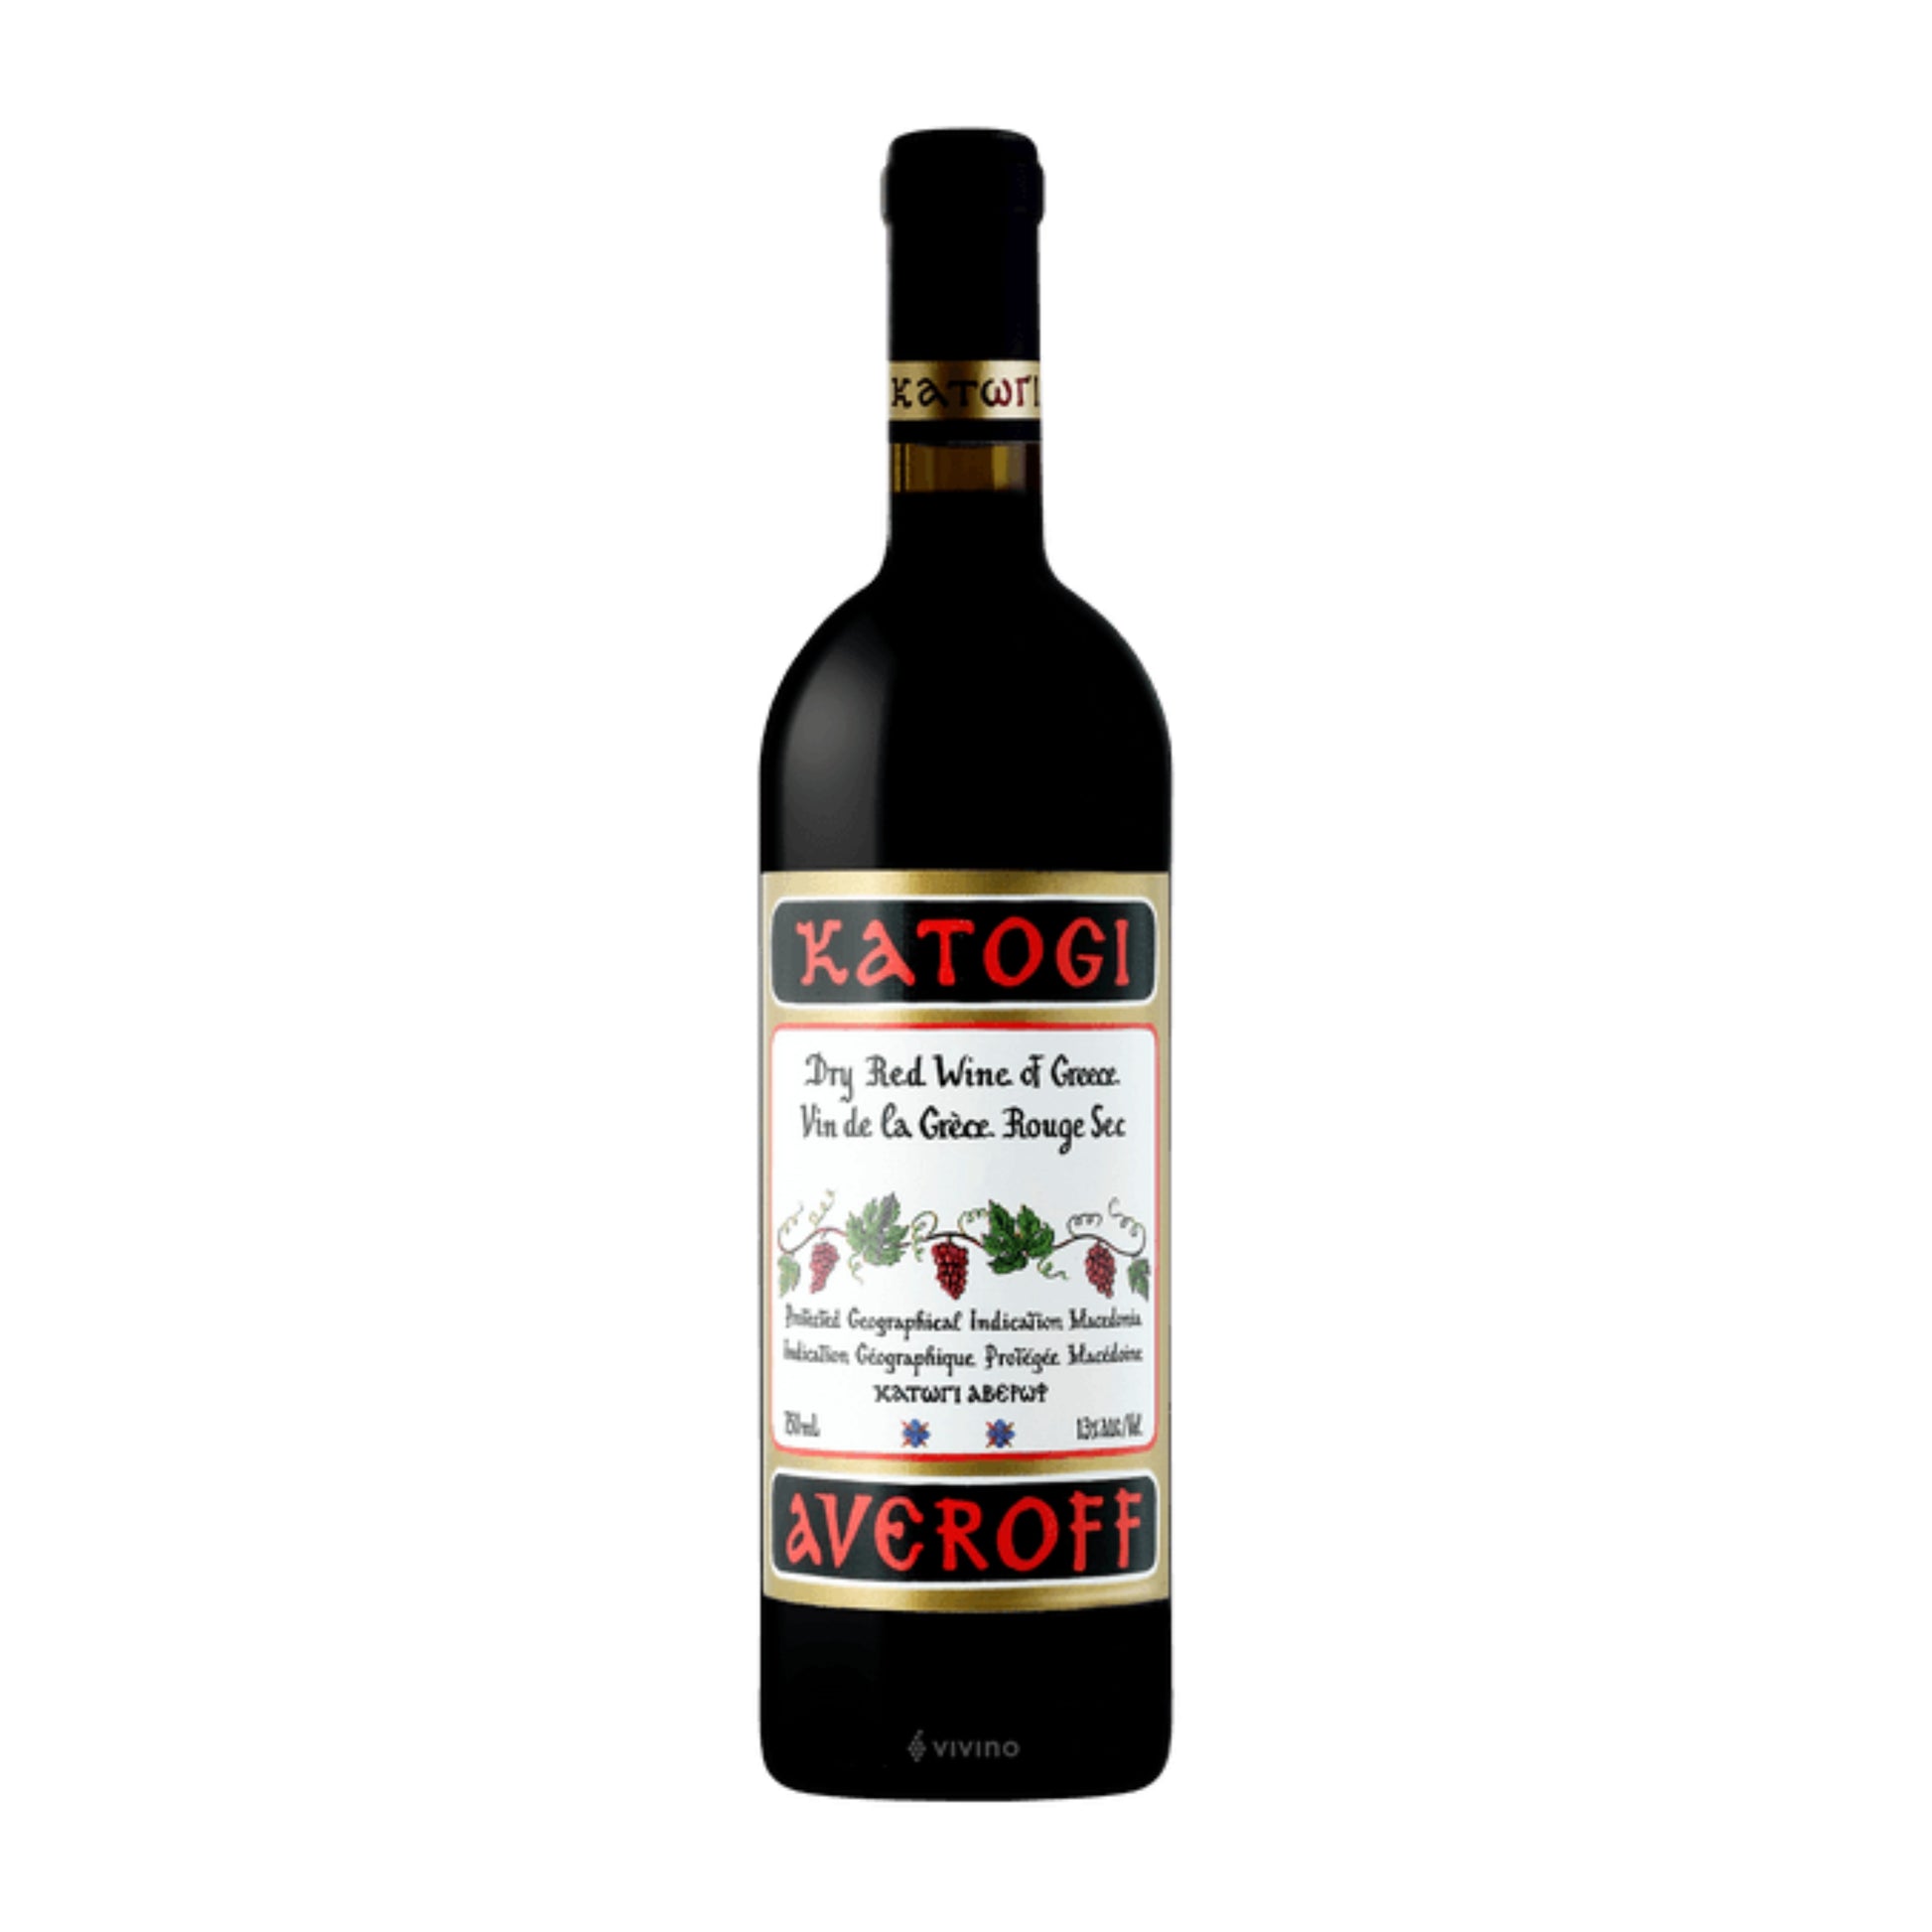 Epicerie-Grecque-Produits-Grecs-Vin-rouge-katogi-averoff